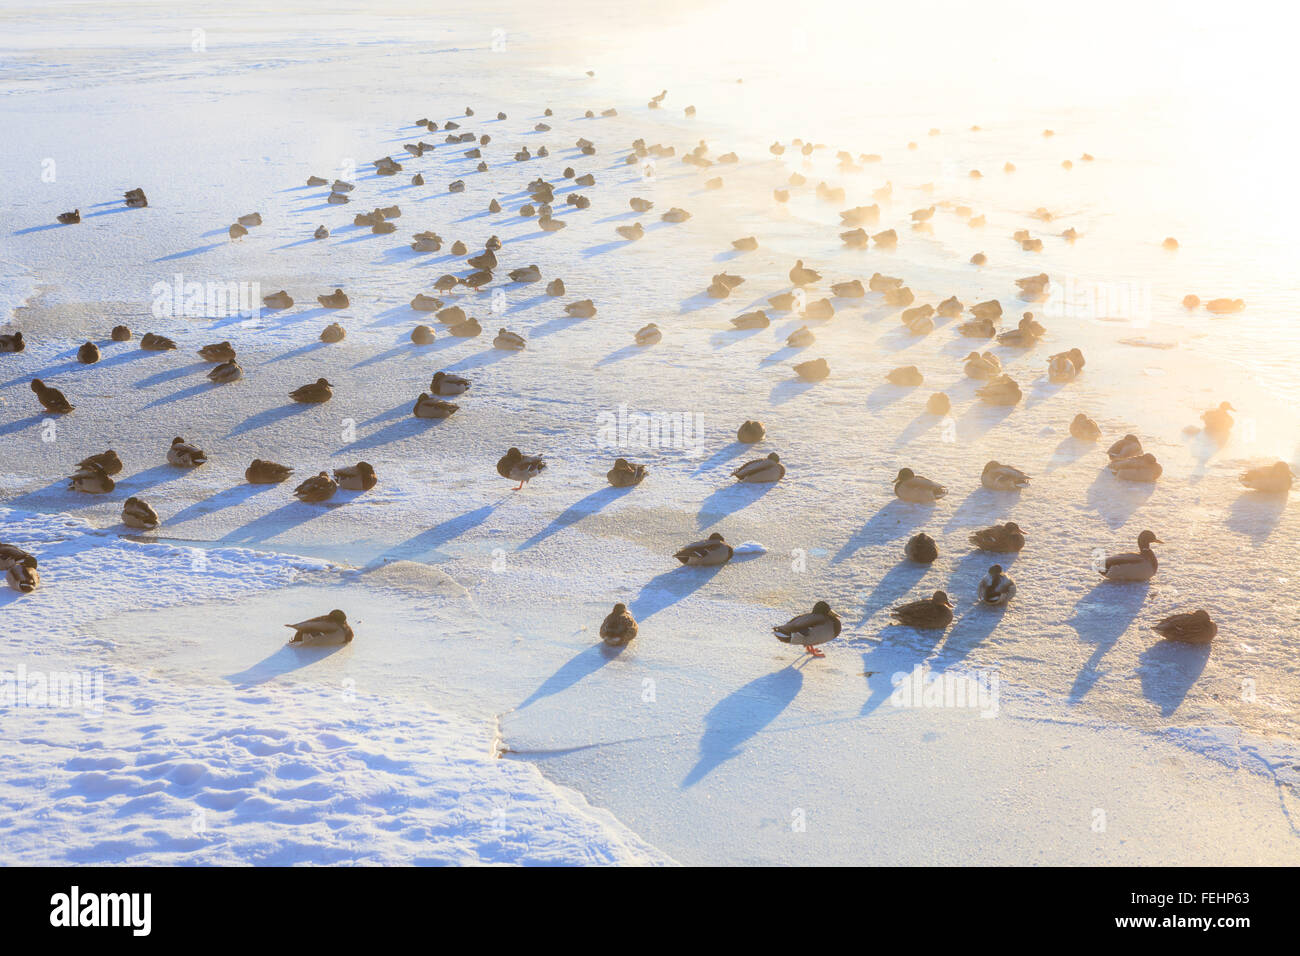 Ducks on ice freezing cold morning Stock Photo